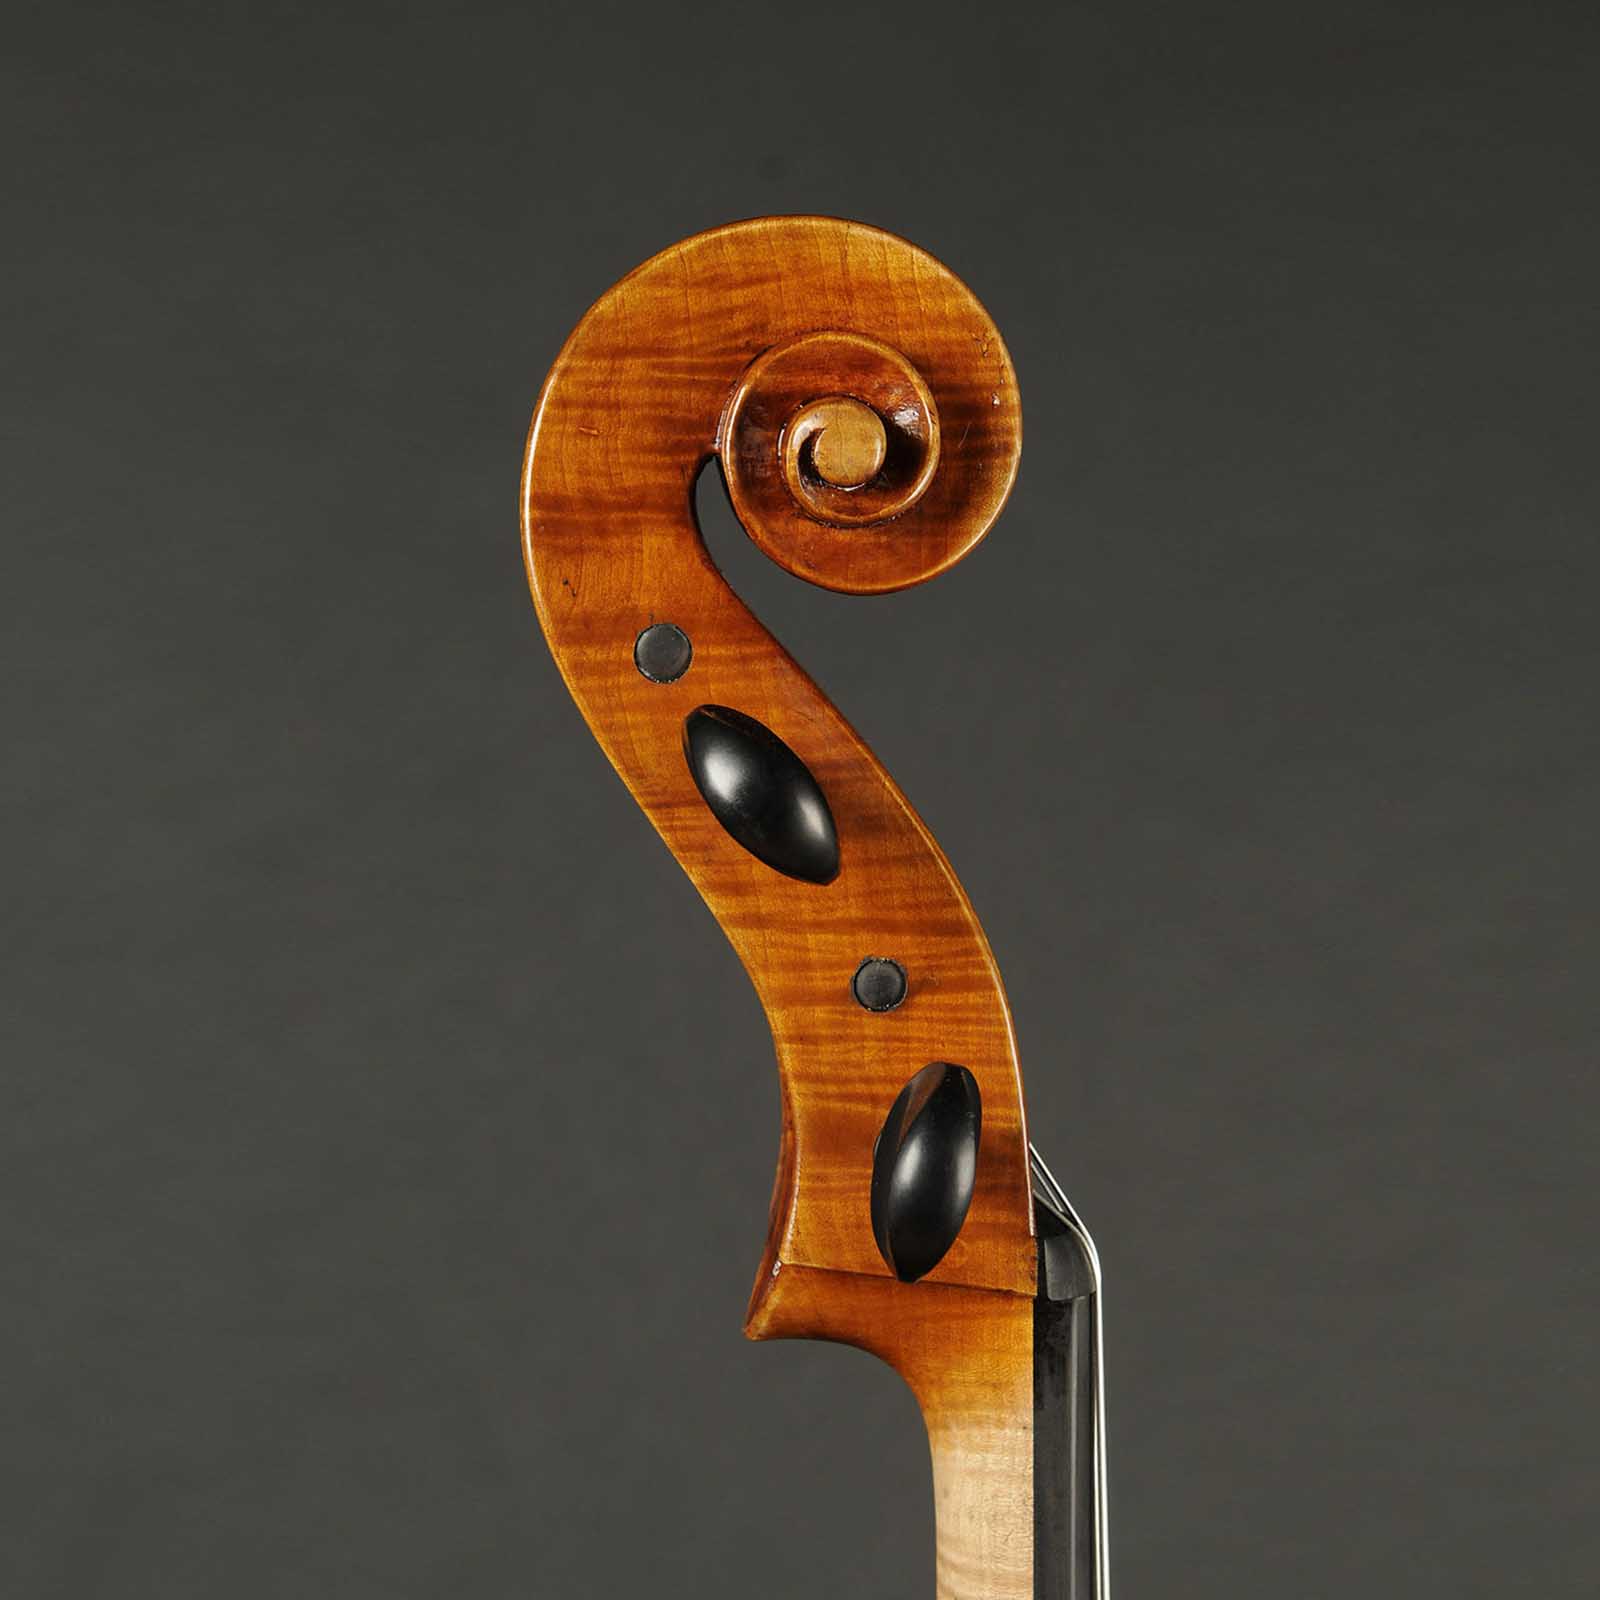 Antonio Stradivari Cremona 1730 “Feuermann“ “Fondo Unico“ - Image 6